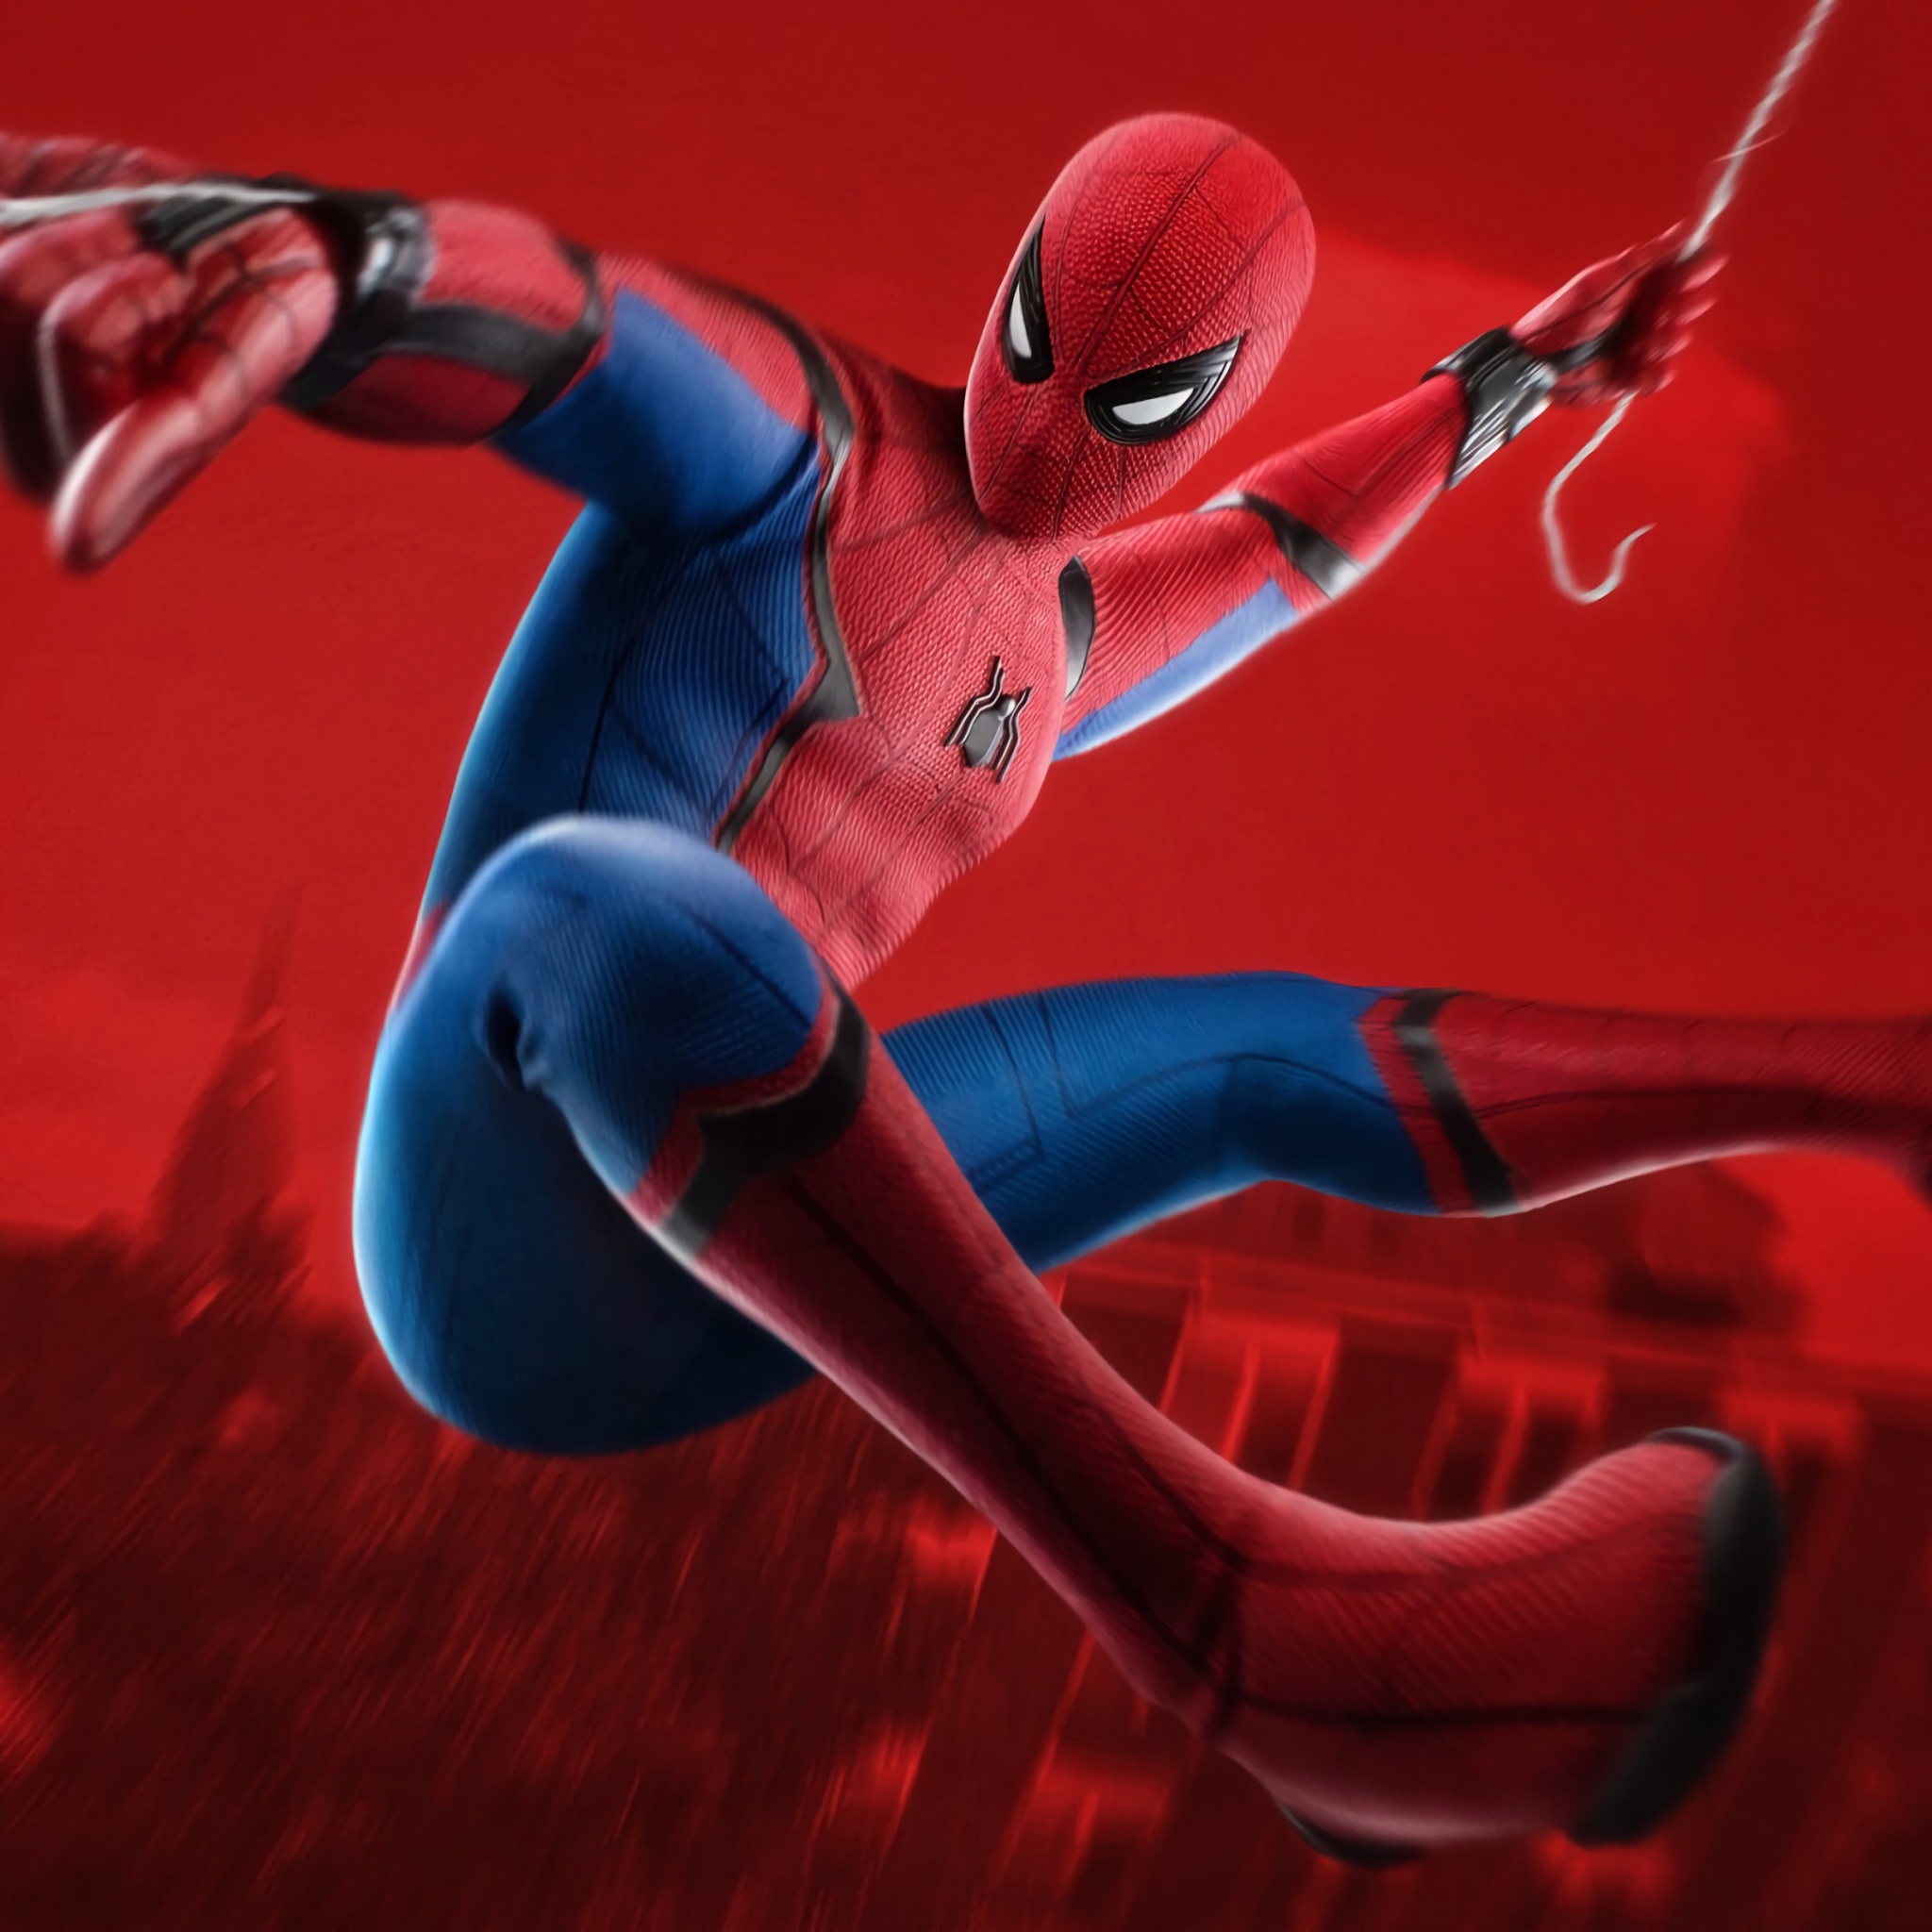 SpiderMan Wallpaper 4K Marvel Superheroes Games 1123